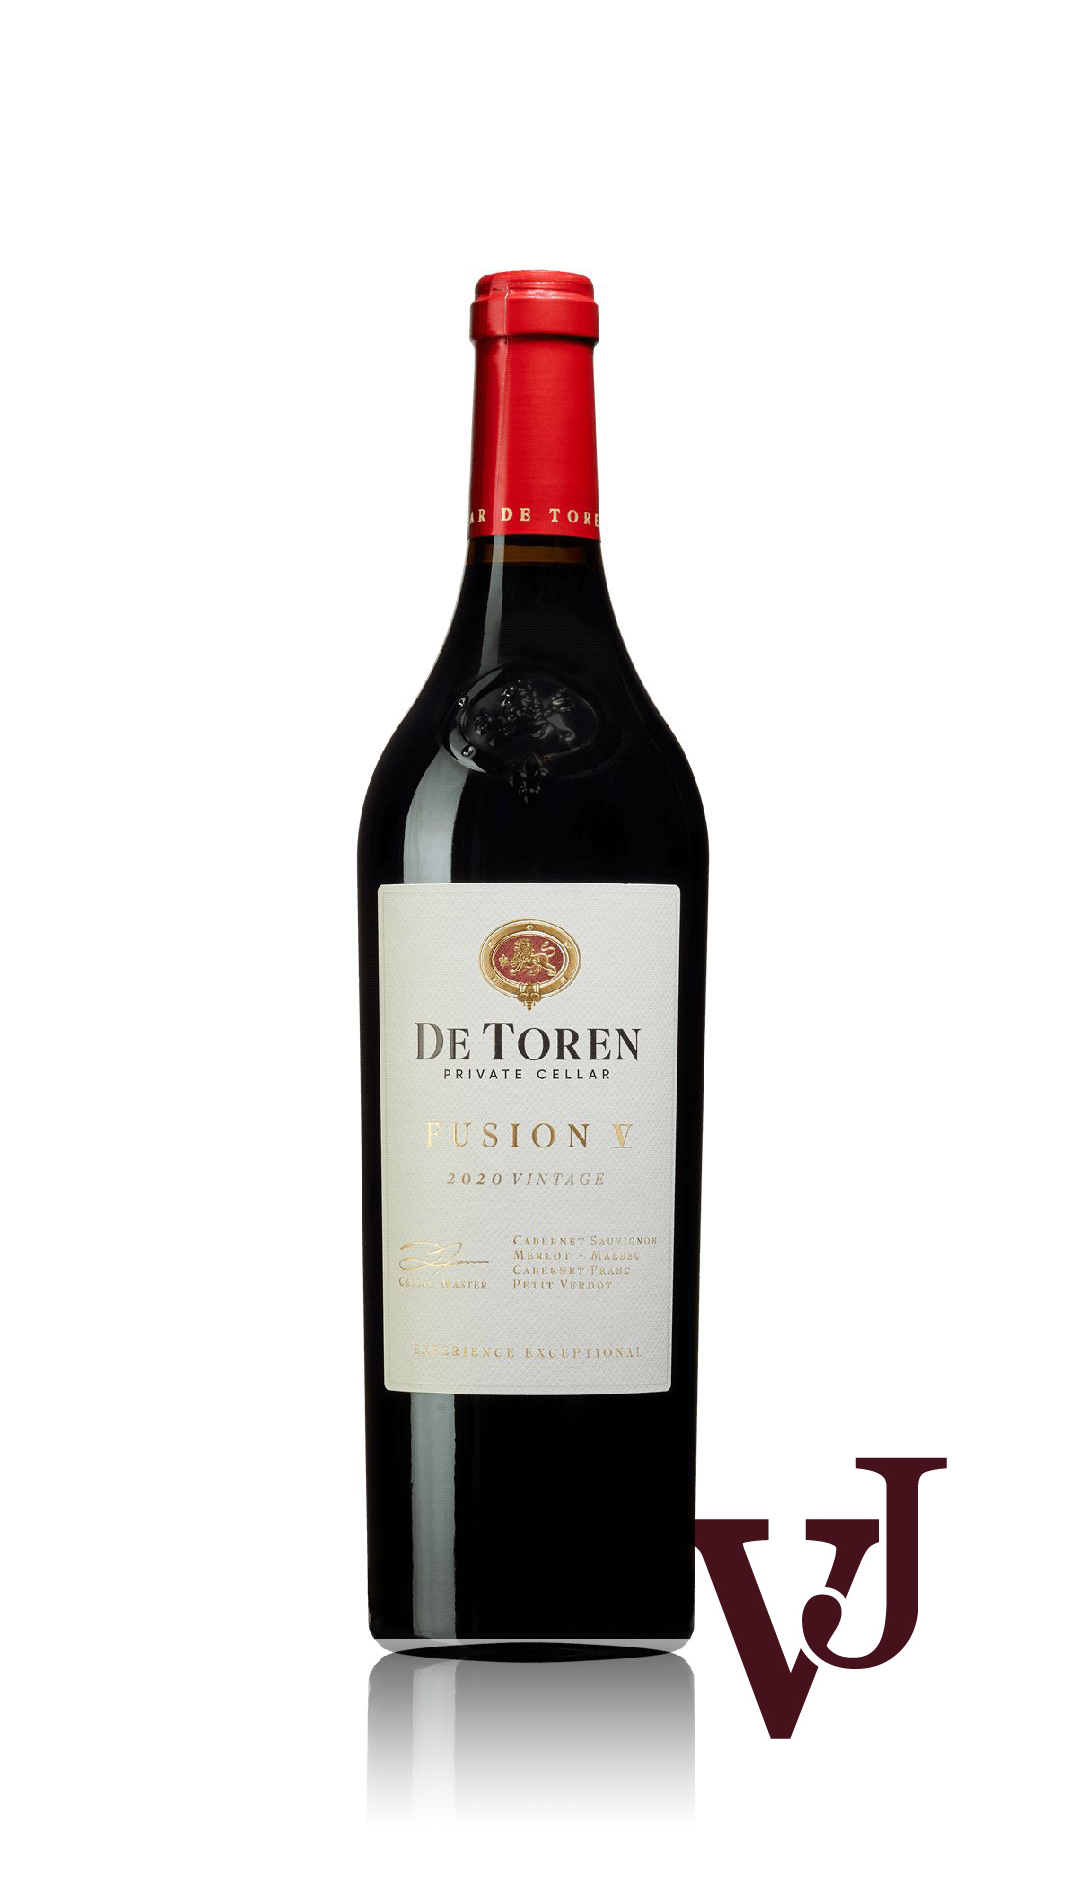 Rött Vin - De Toren Fusion V 2020 artikel nummer 9223401 från producenten De Toren Private Cellar från Sydafrika